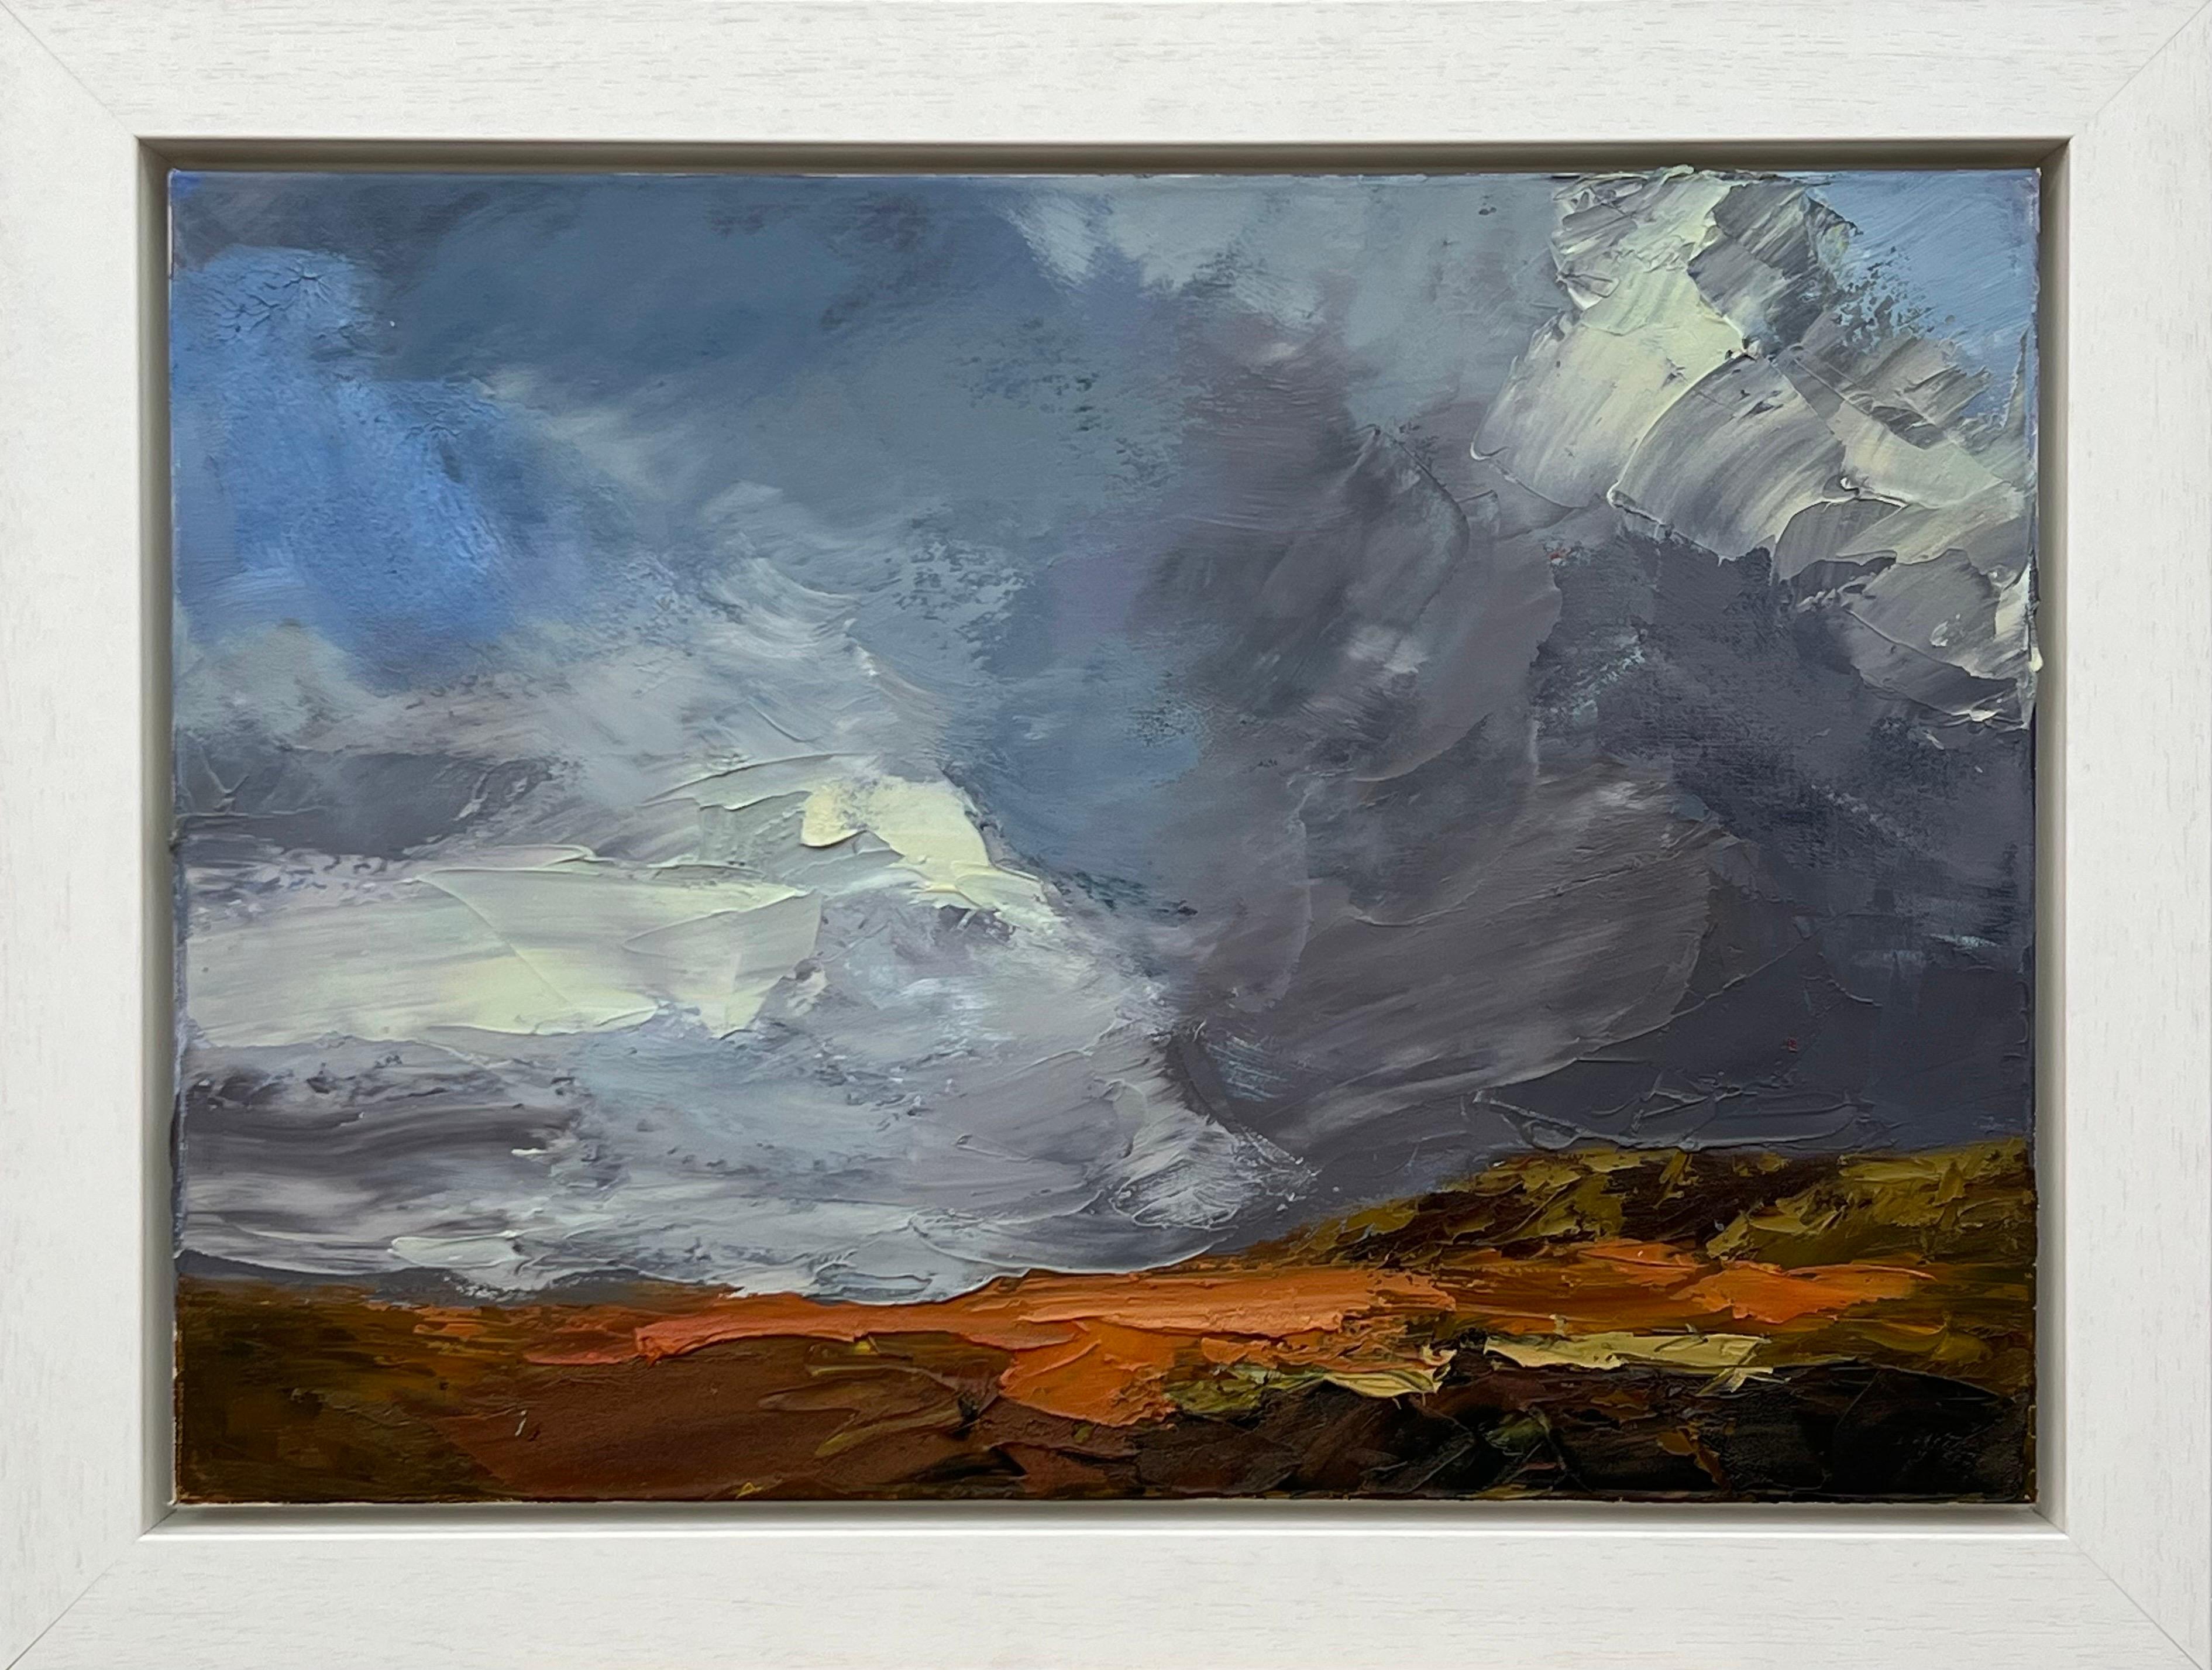 Colin Halliday Landscape Painting – Impasto, Ölgemälde eines Moor in englischer Landschaft, vom britischen Landschaftsmaler